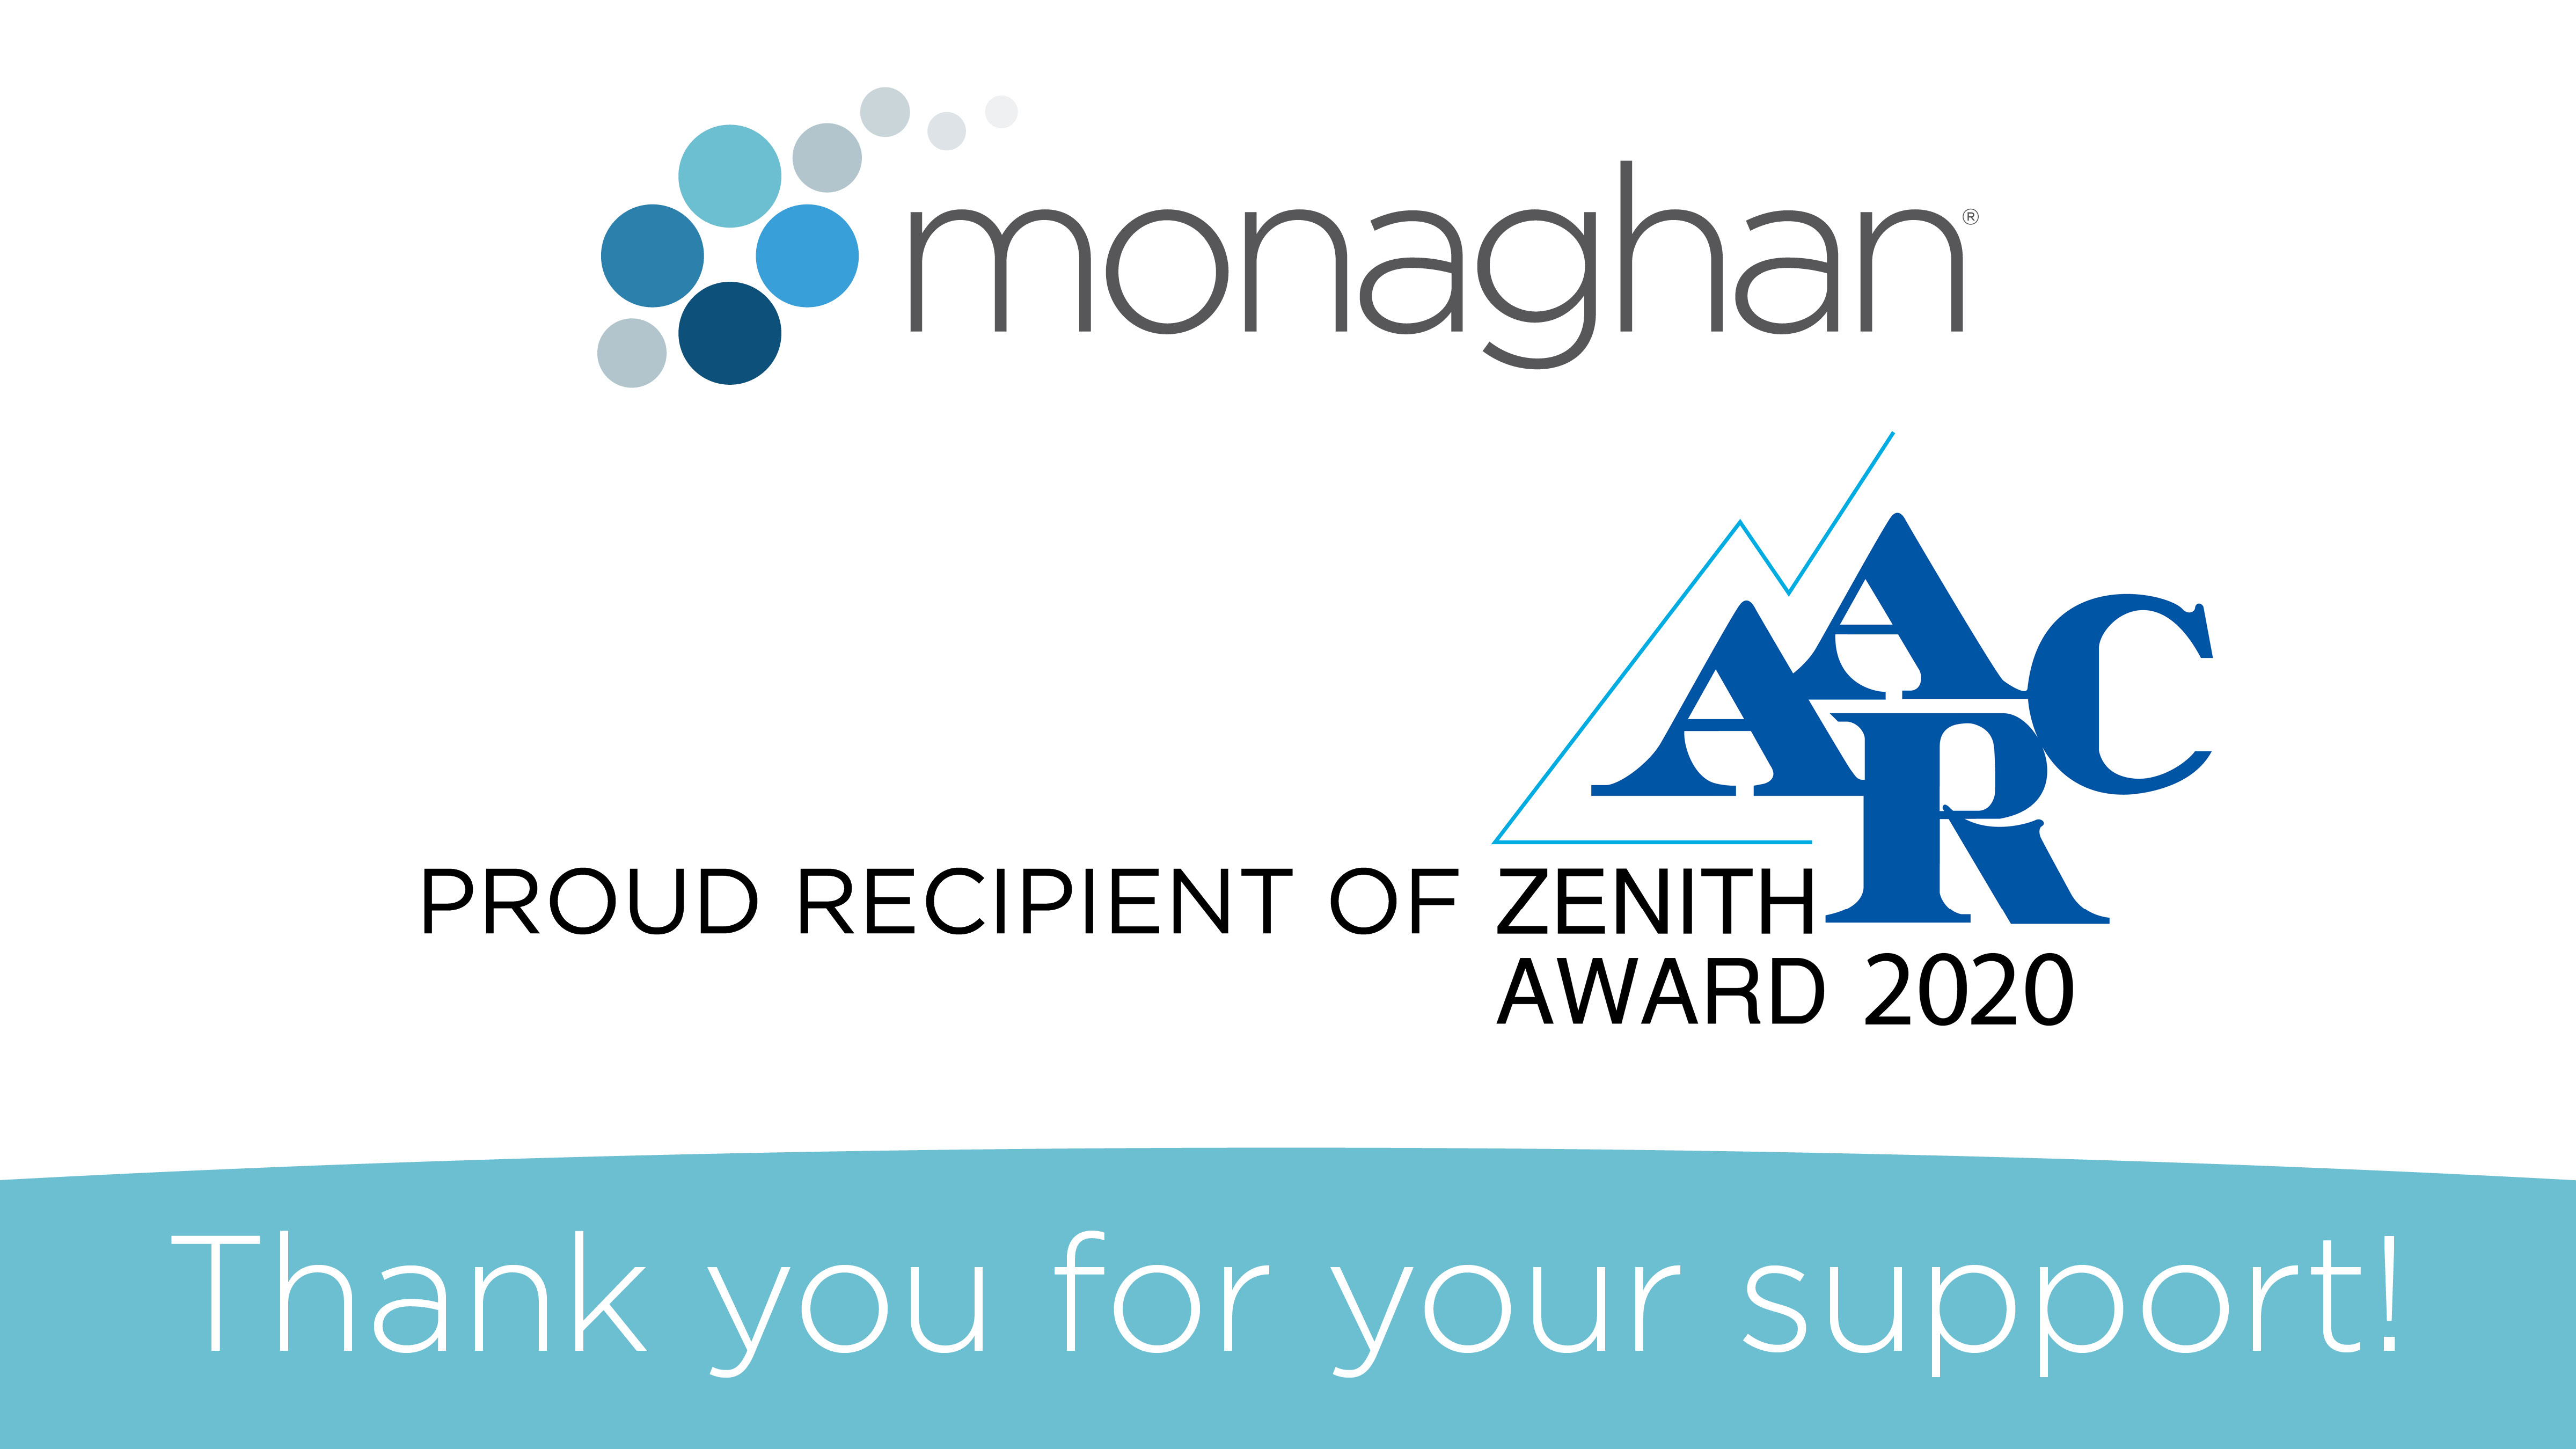 Monaghan - Proud recipient of Zenith Award 2020, AARC